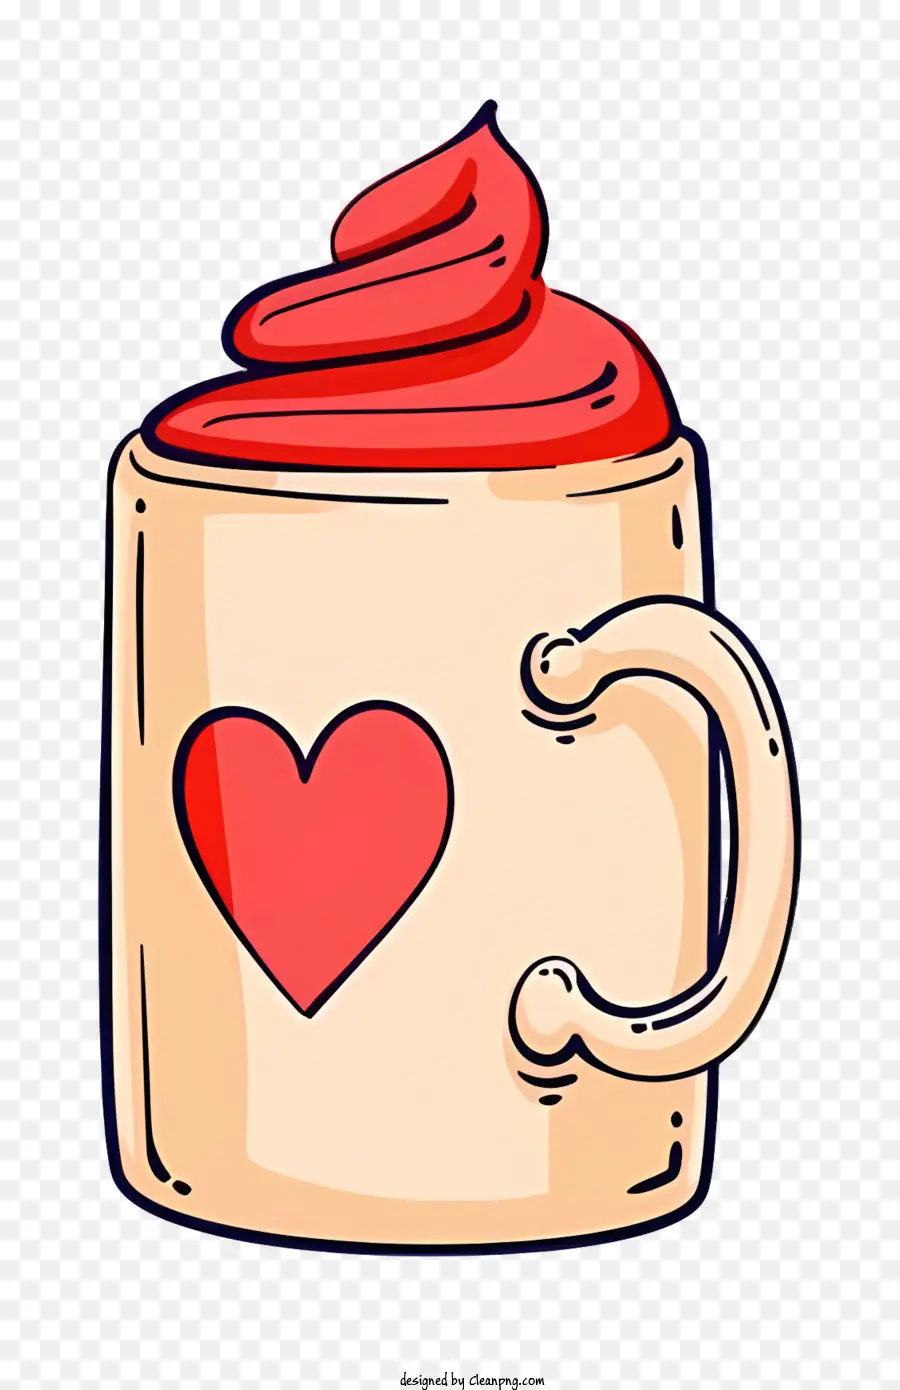 trái tim - Red Cup với trái tim tượng trưng cho tình yêu và niềm đam mê